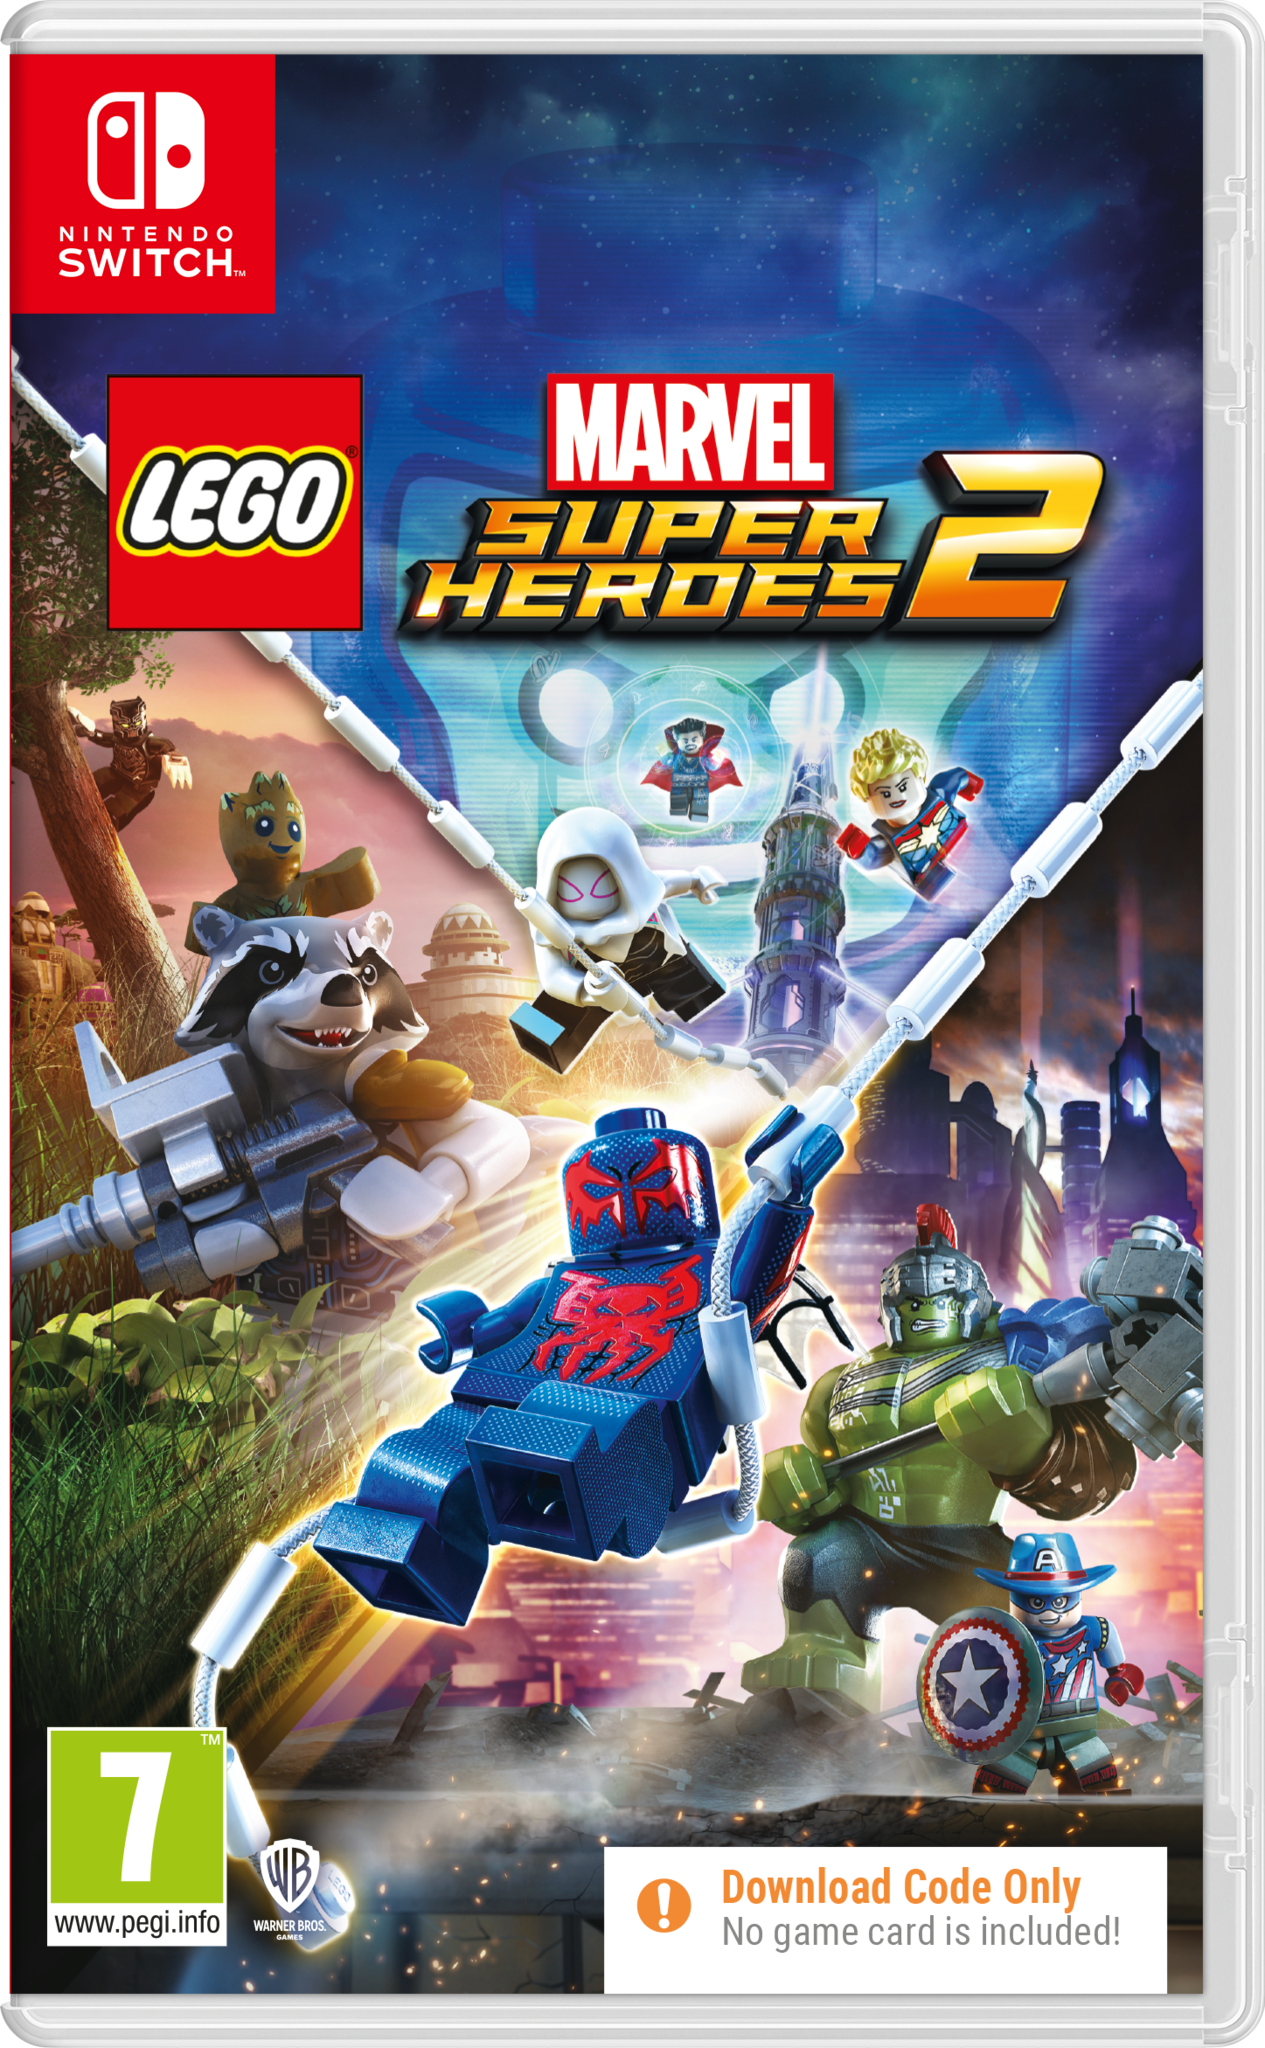 LEGO Marvel Superheroes 2 Ninendo Switch